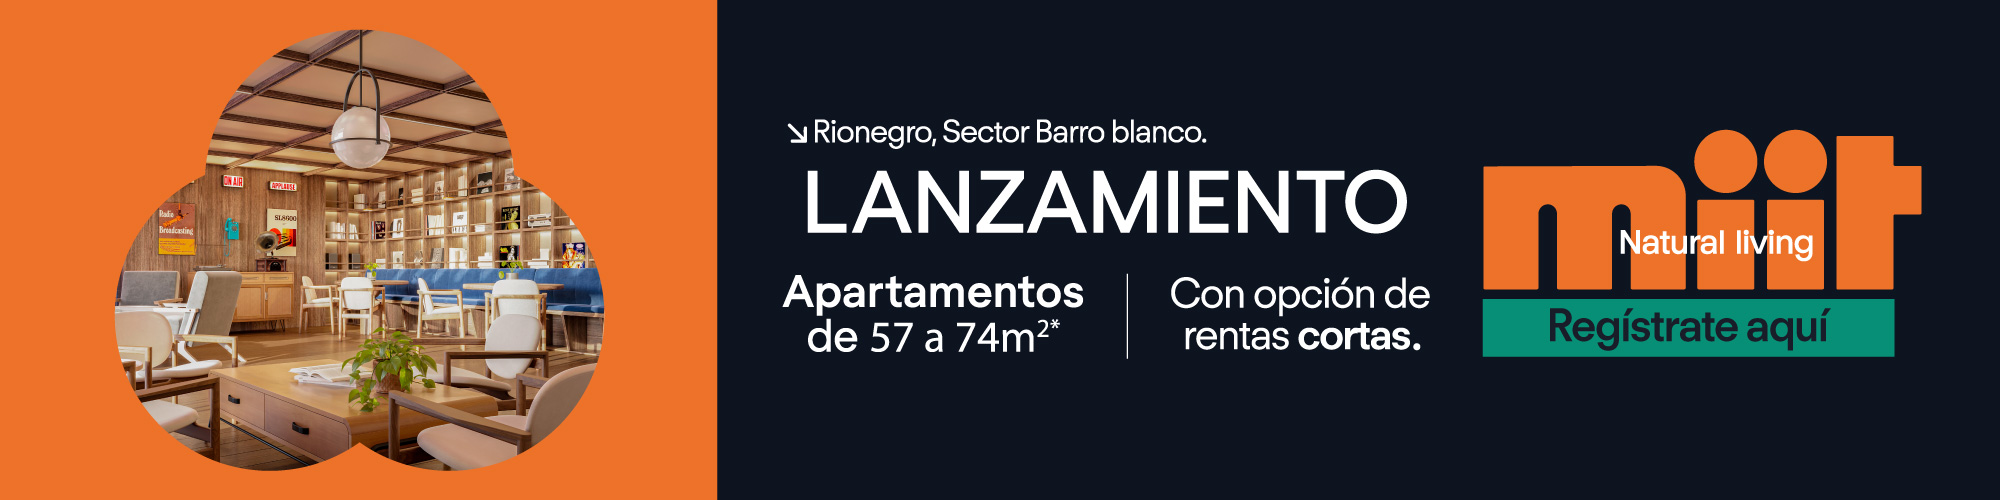 Miit rentas cortas en Rionegro Lanzamiento